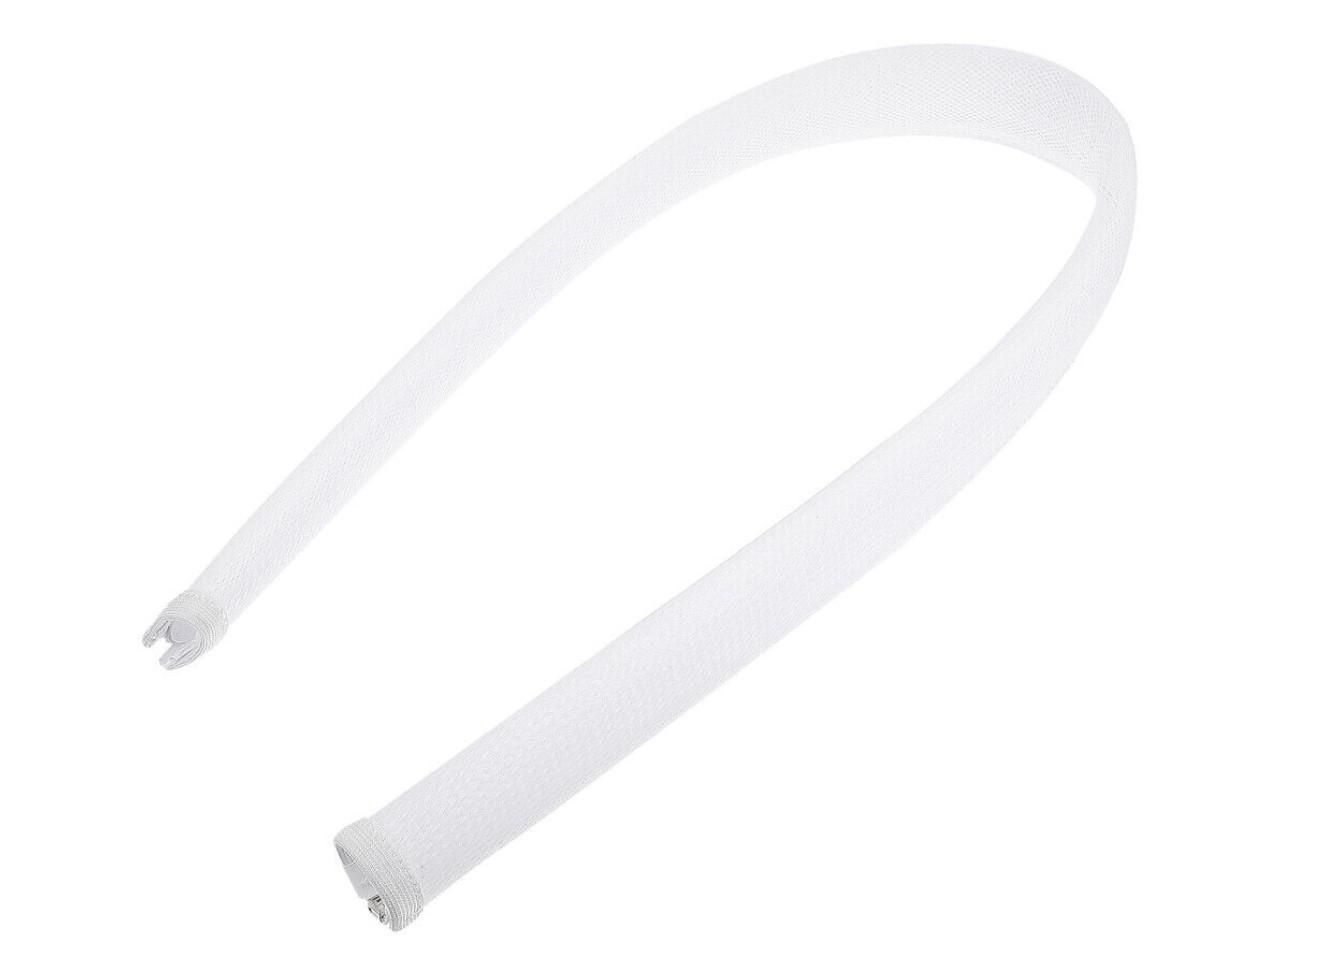 Vivolink PROZIPSLEEVEW1248 cable sleeve White